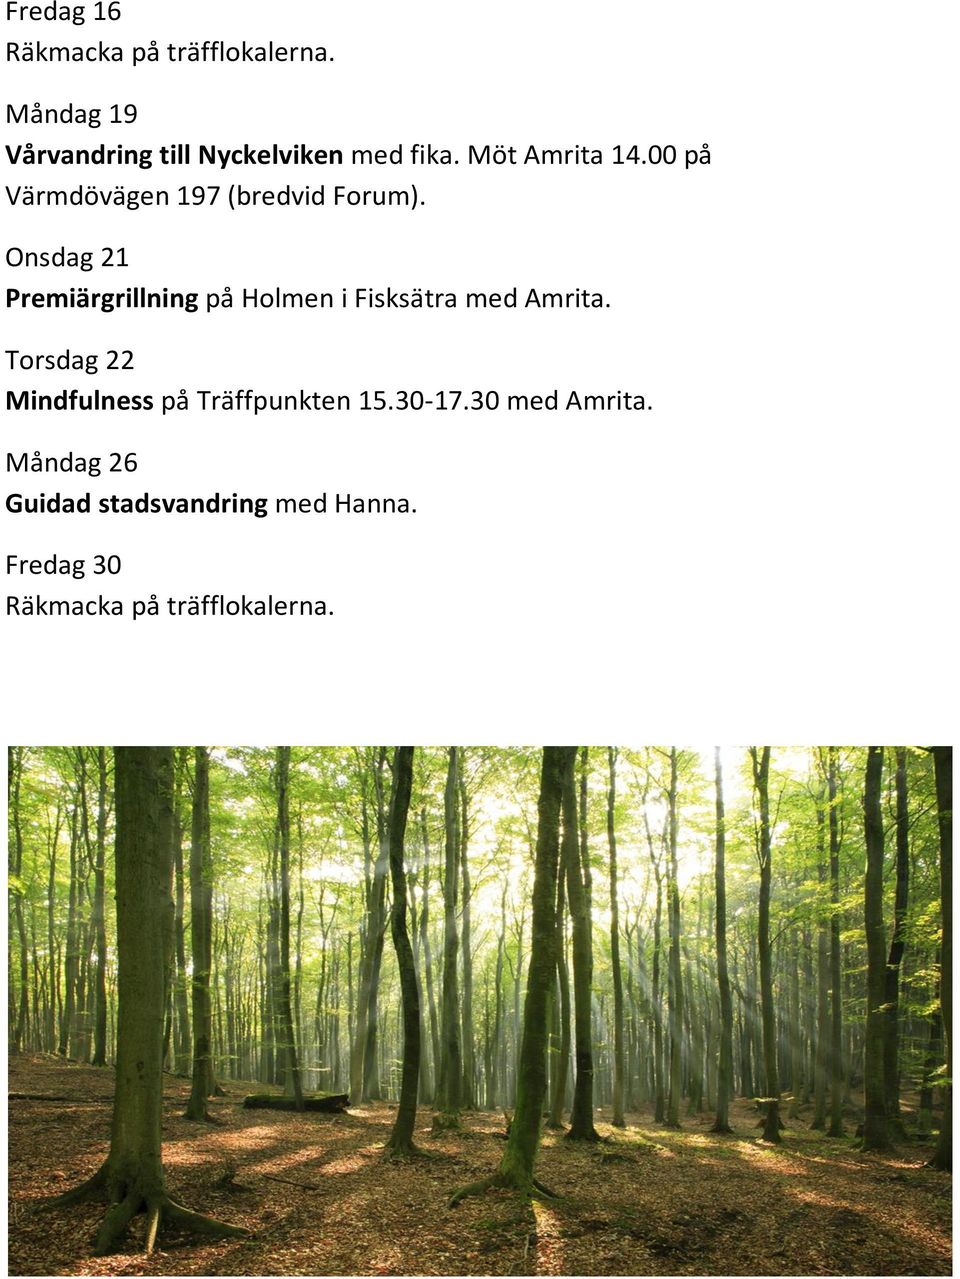 Onsdag 21 Premiärgrillning på Holmen i Fisksätra med Amrita.